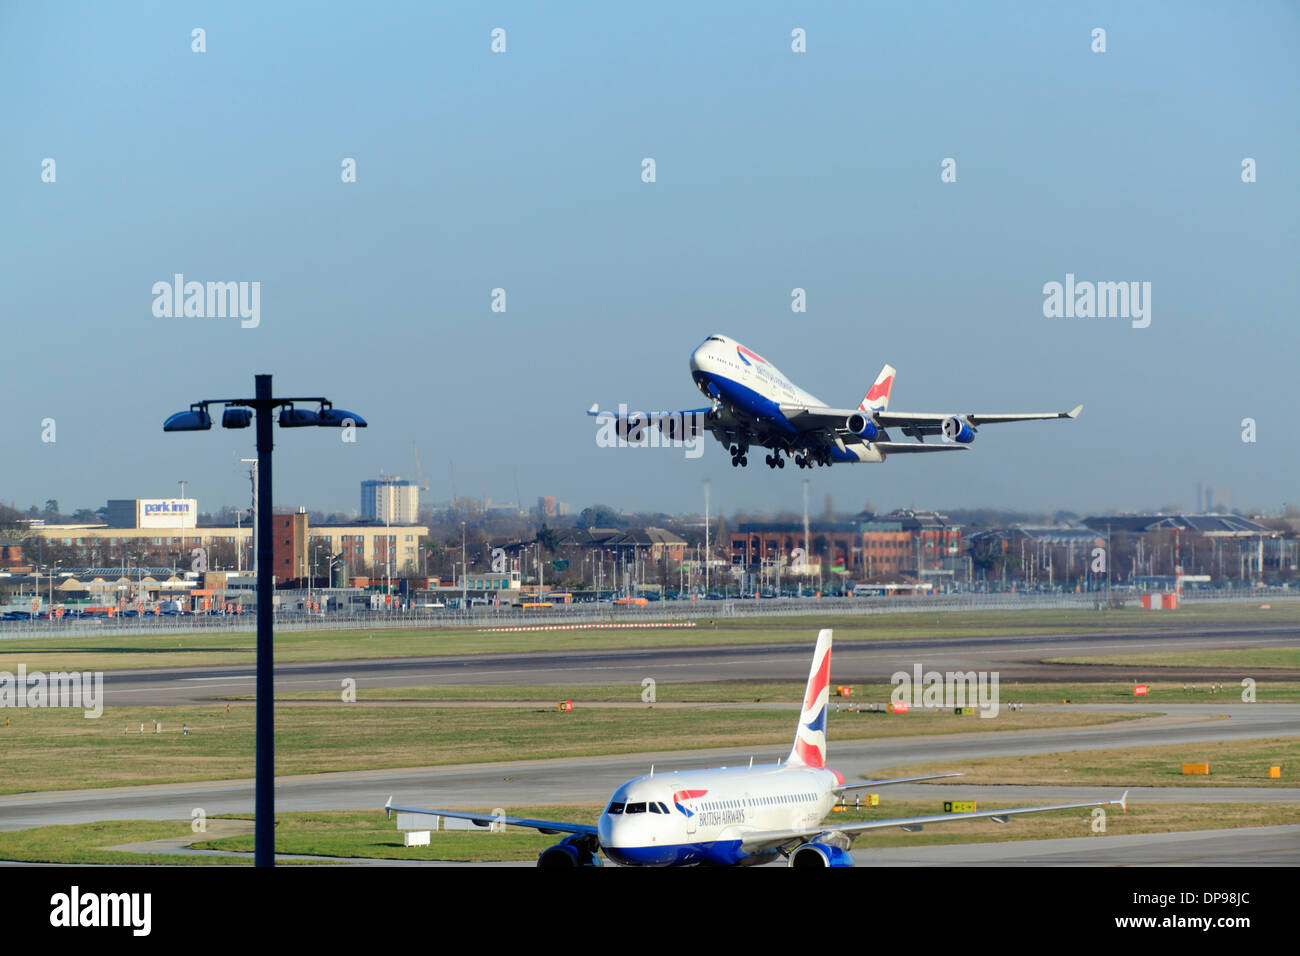 British Airways Boeing 747 décolle à l'aéroport d'Heathrow la piste 27R Banque D'Images